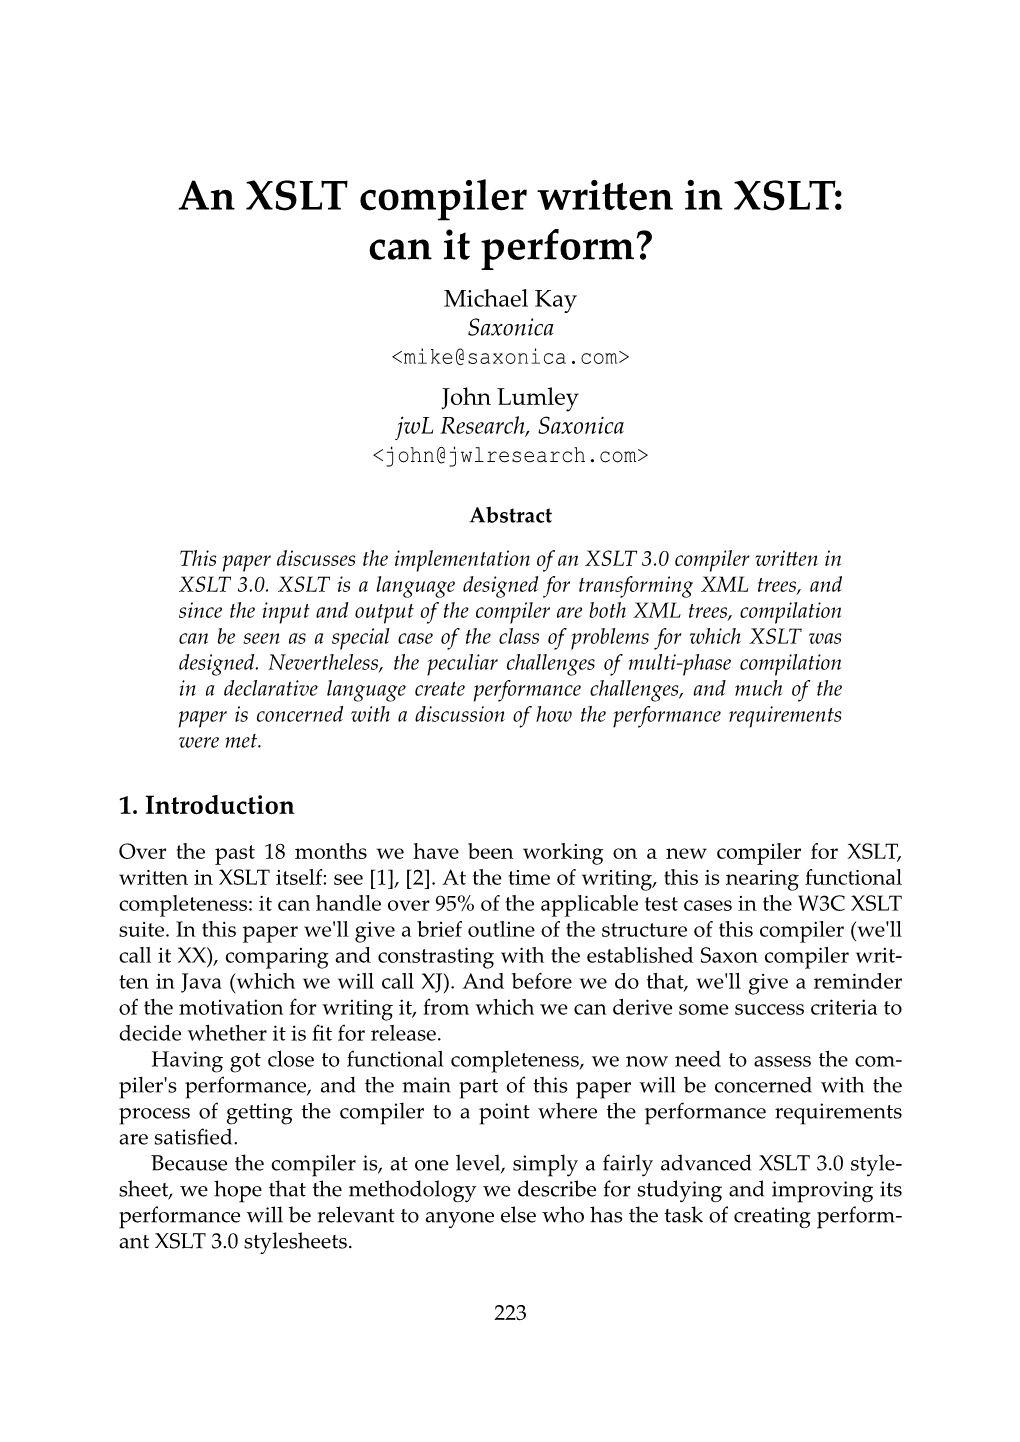 An XSLT Compiler Written in XSLT: Can It Perform?